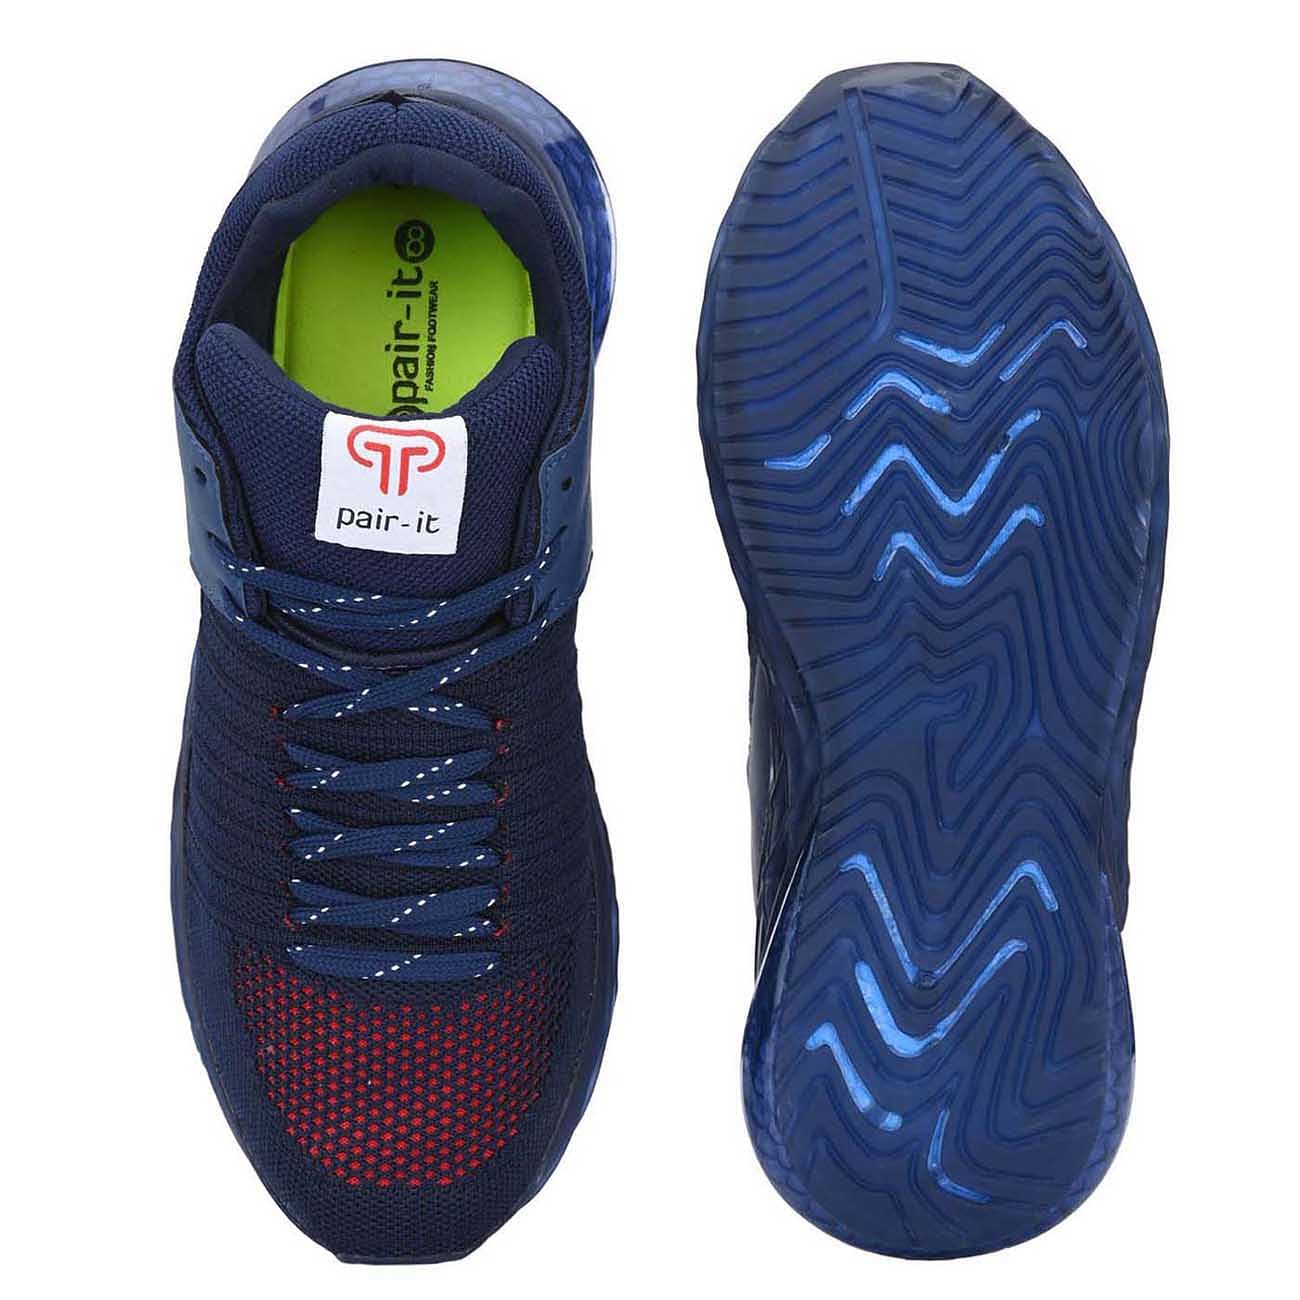 Pair-it Men's Sports Shoes - Blue - LZ-SPORTS023